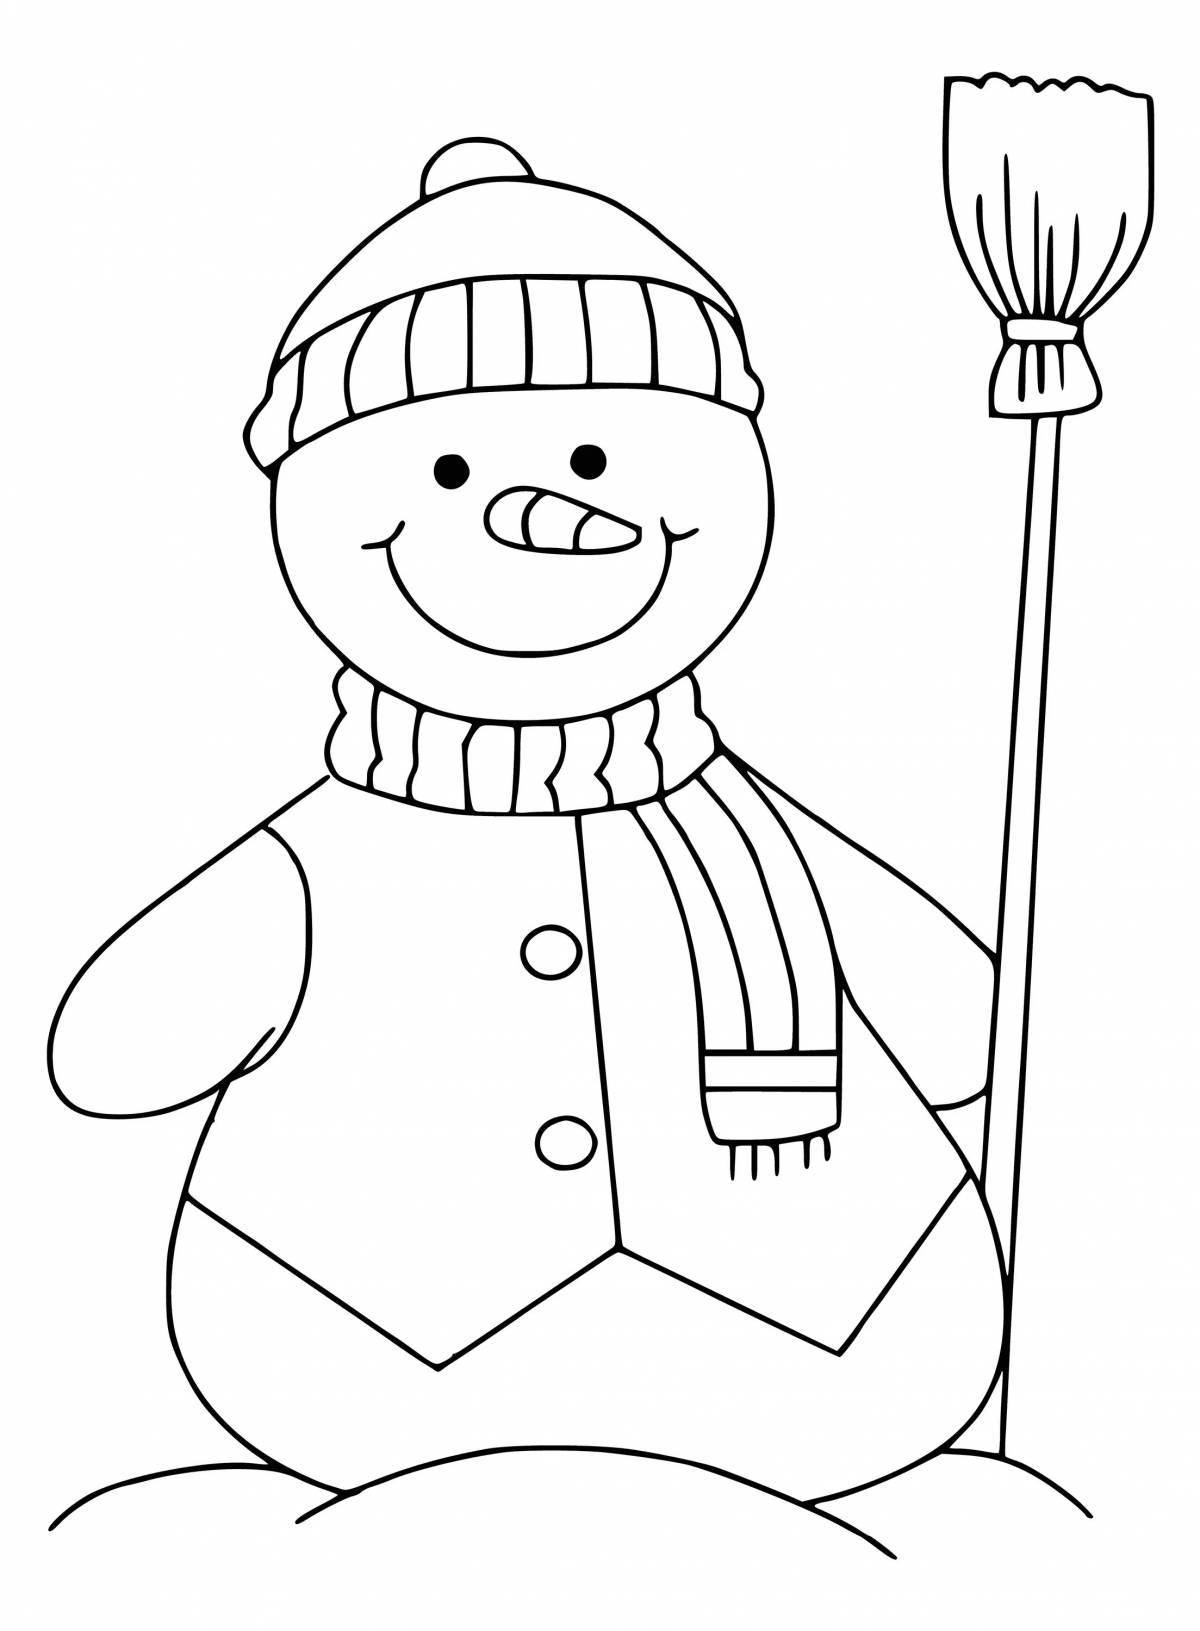 Милая раскраска снеговик с метлой